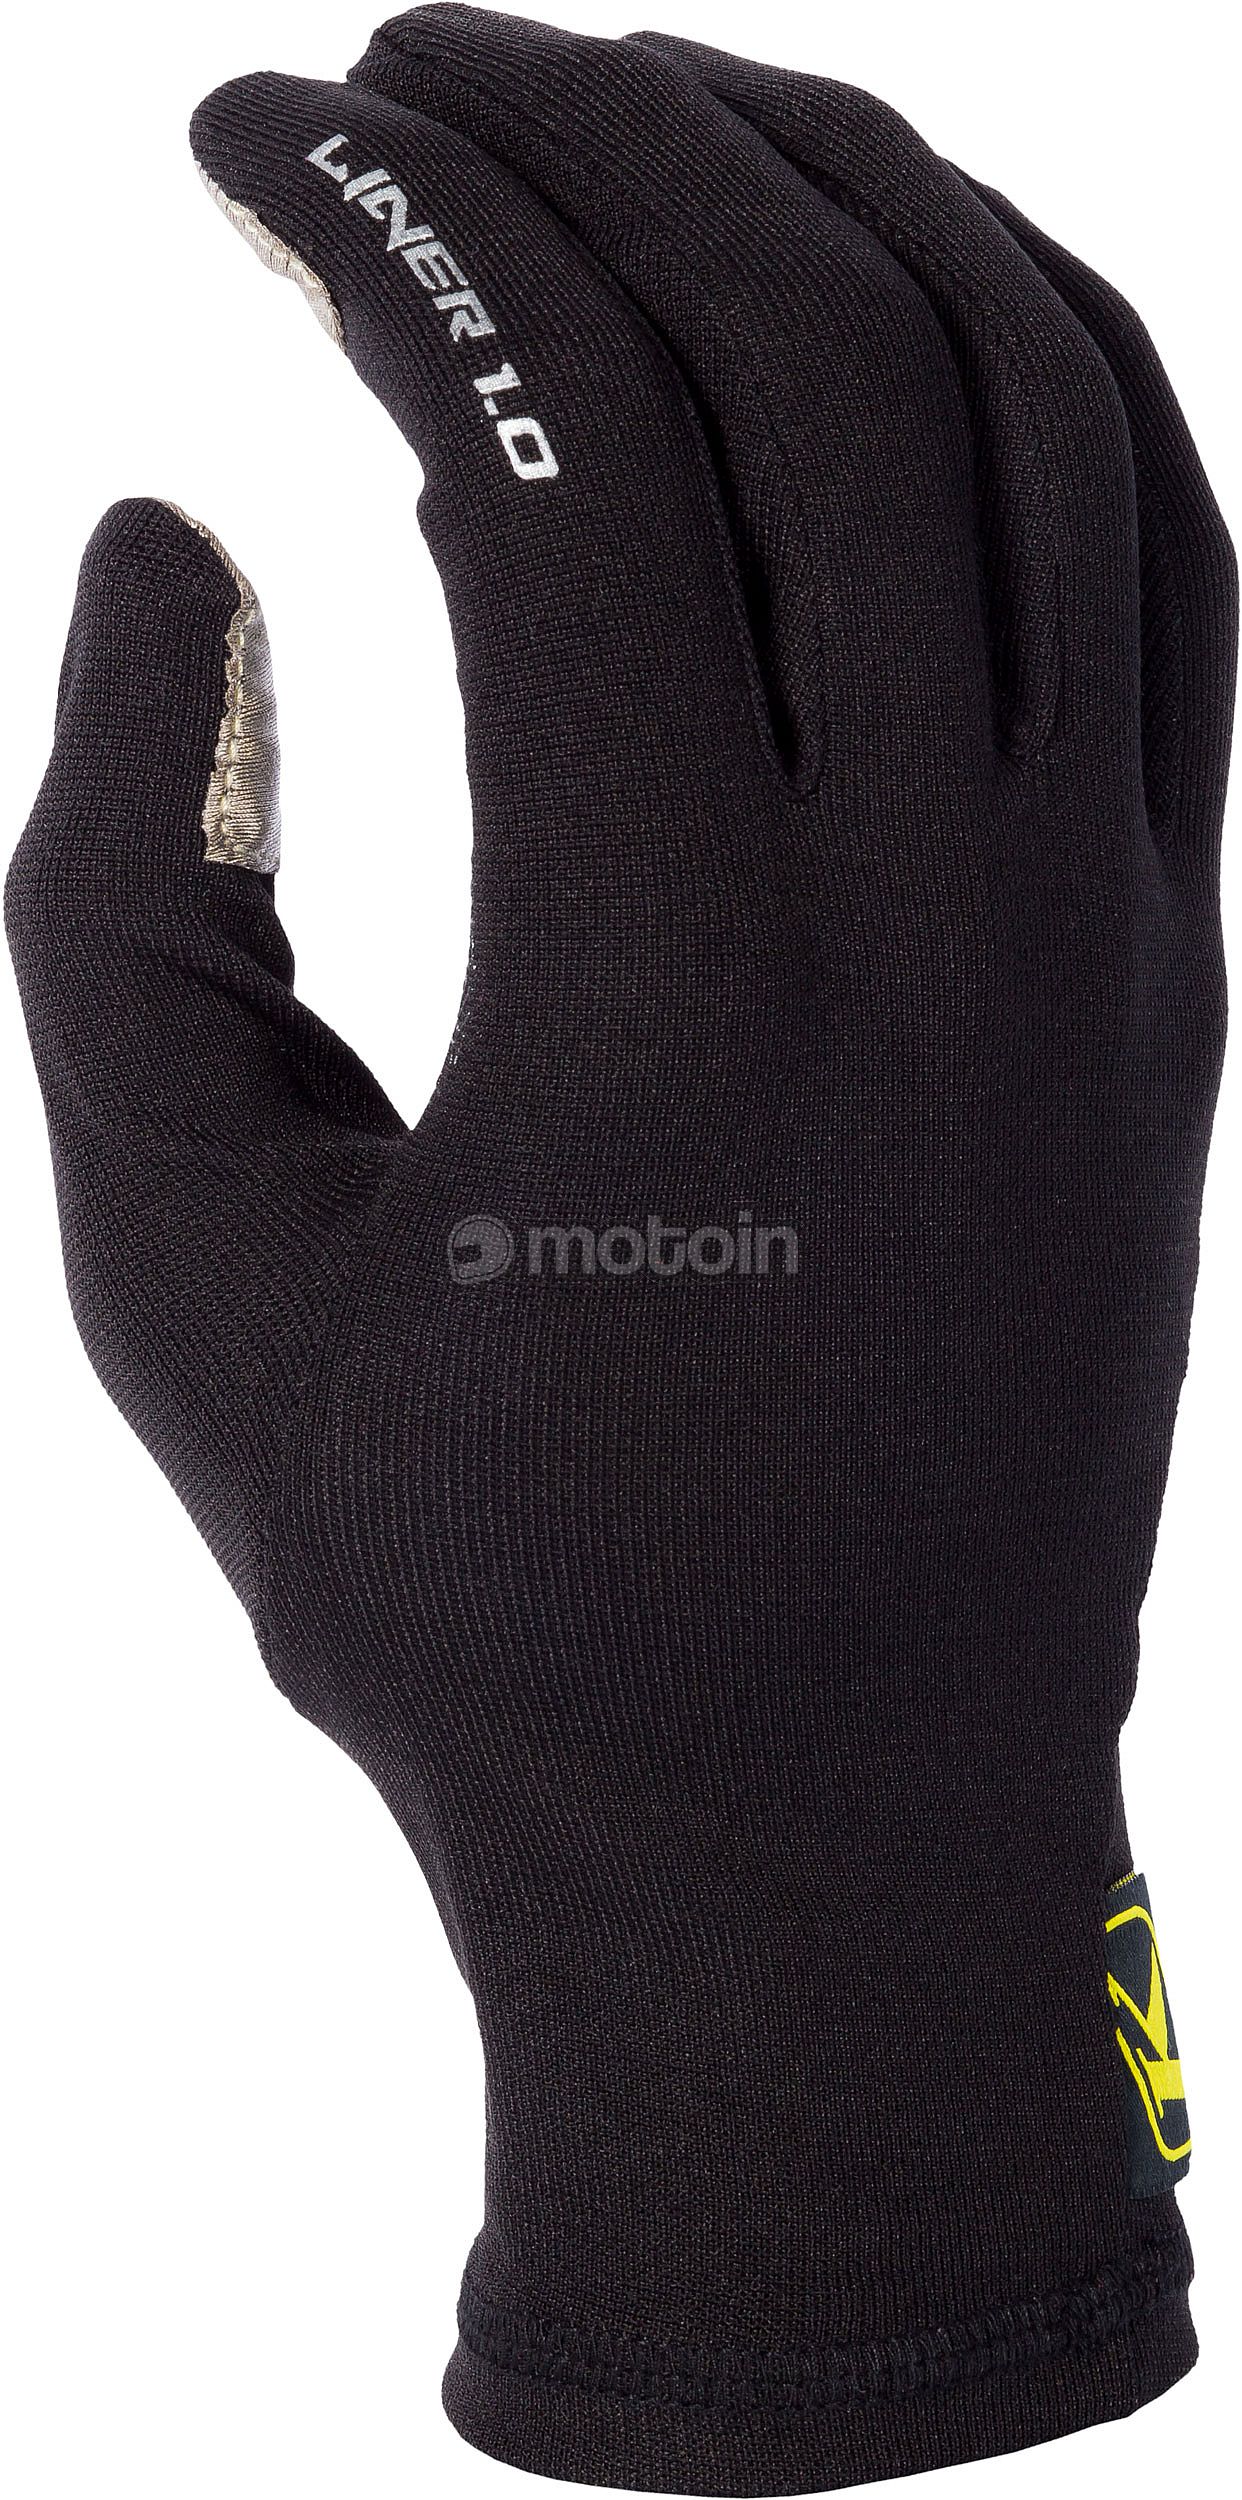 Sous-gants Liner 1.0 Klim moto : , sous-gant de moto